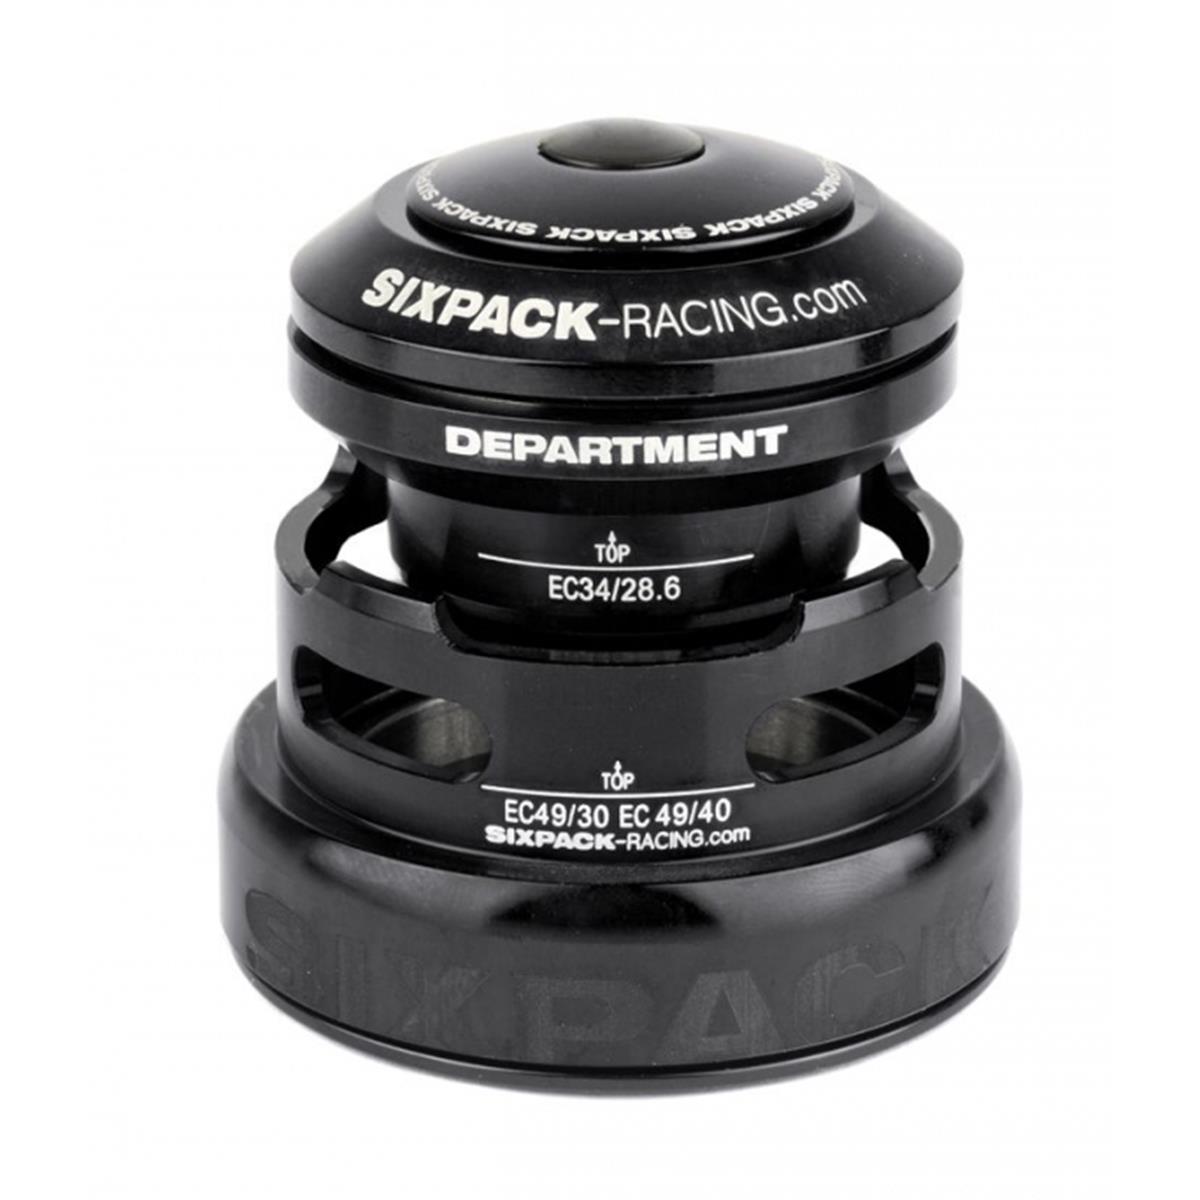 Sixpack Serie Sterzo Department 2in1 Black, EC34 49/28.6 I EC49/30 & EC34/28.6 I EC49/40